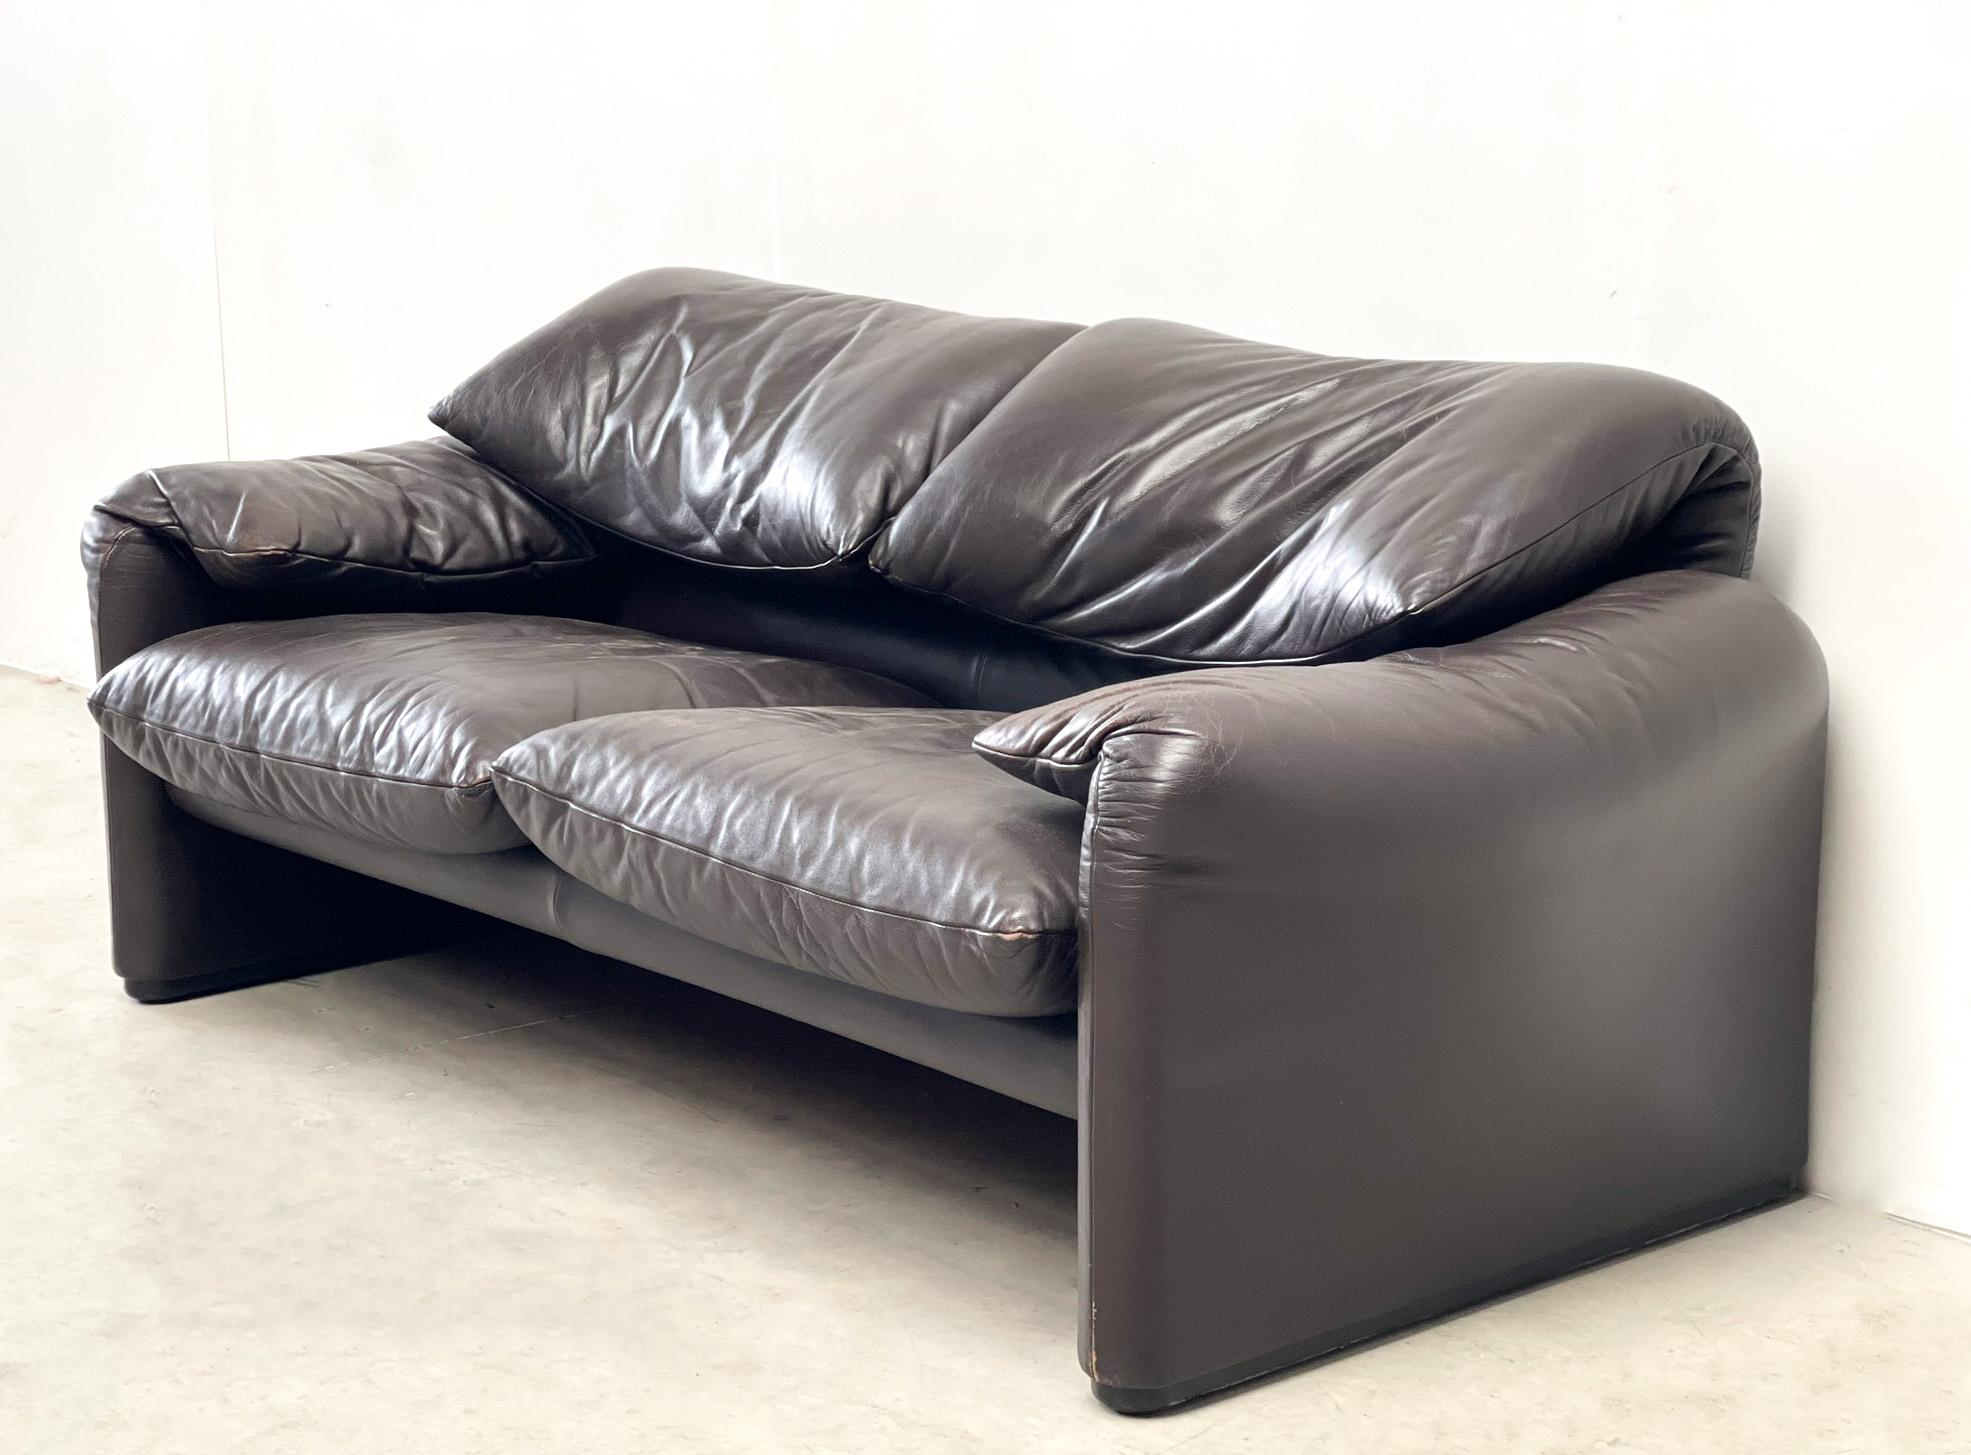 Italian Leather Maralunga Sofa by Vico Magistretti for Cassina